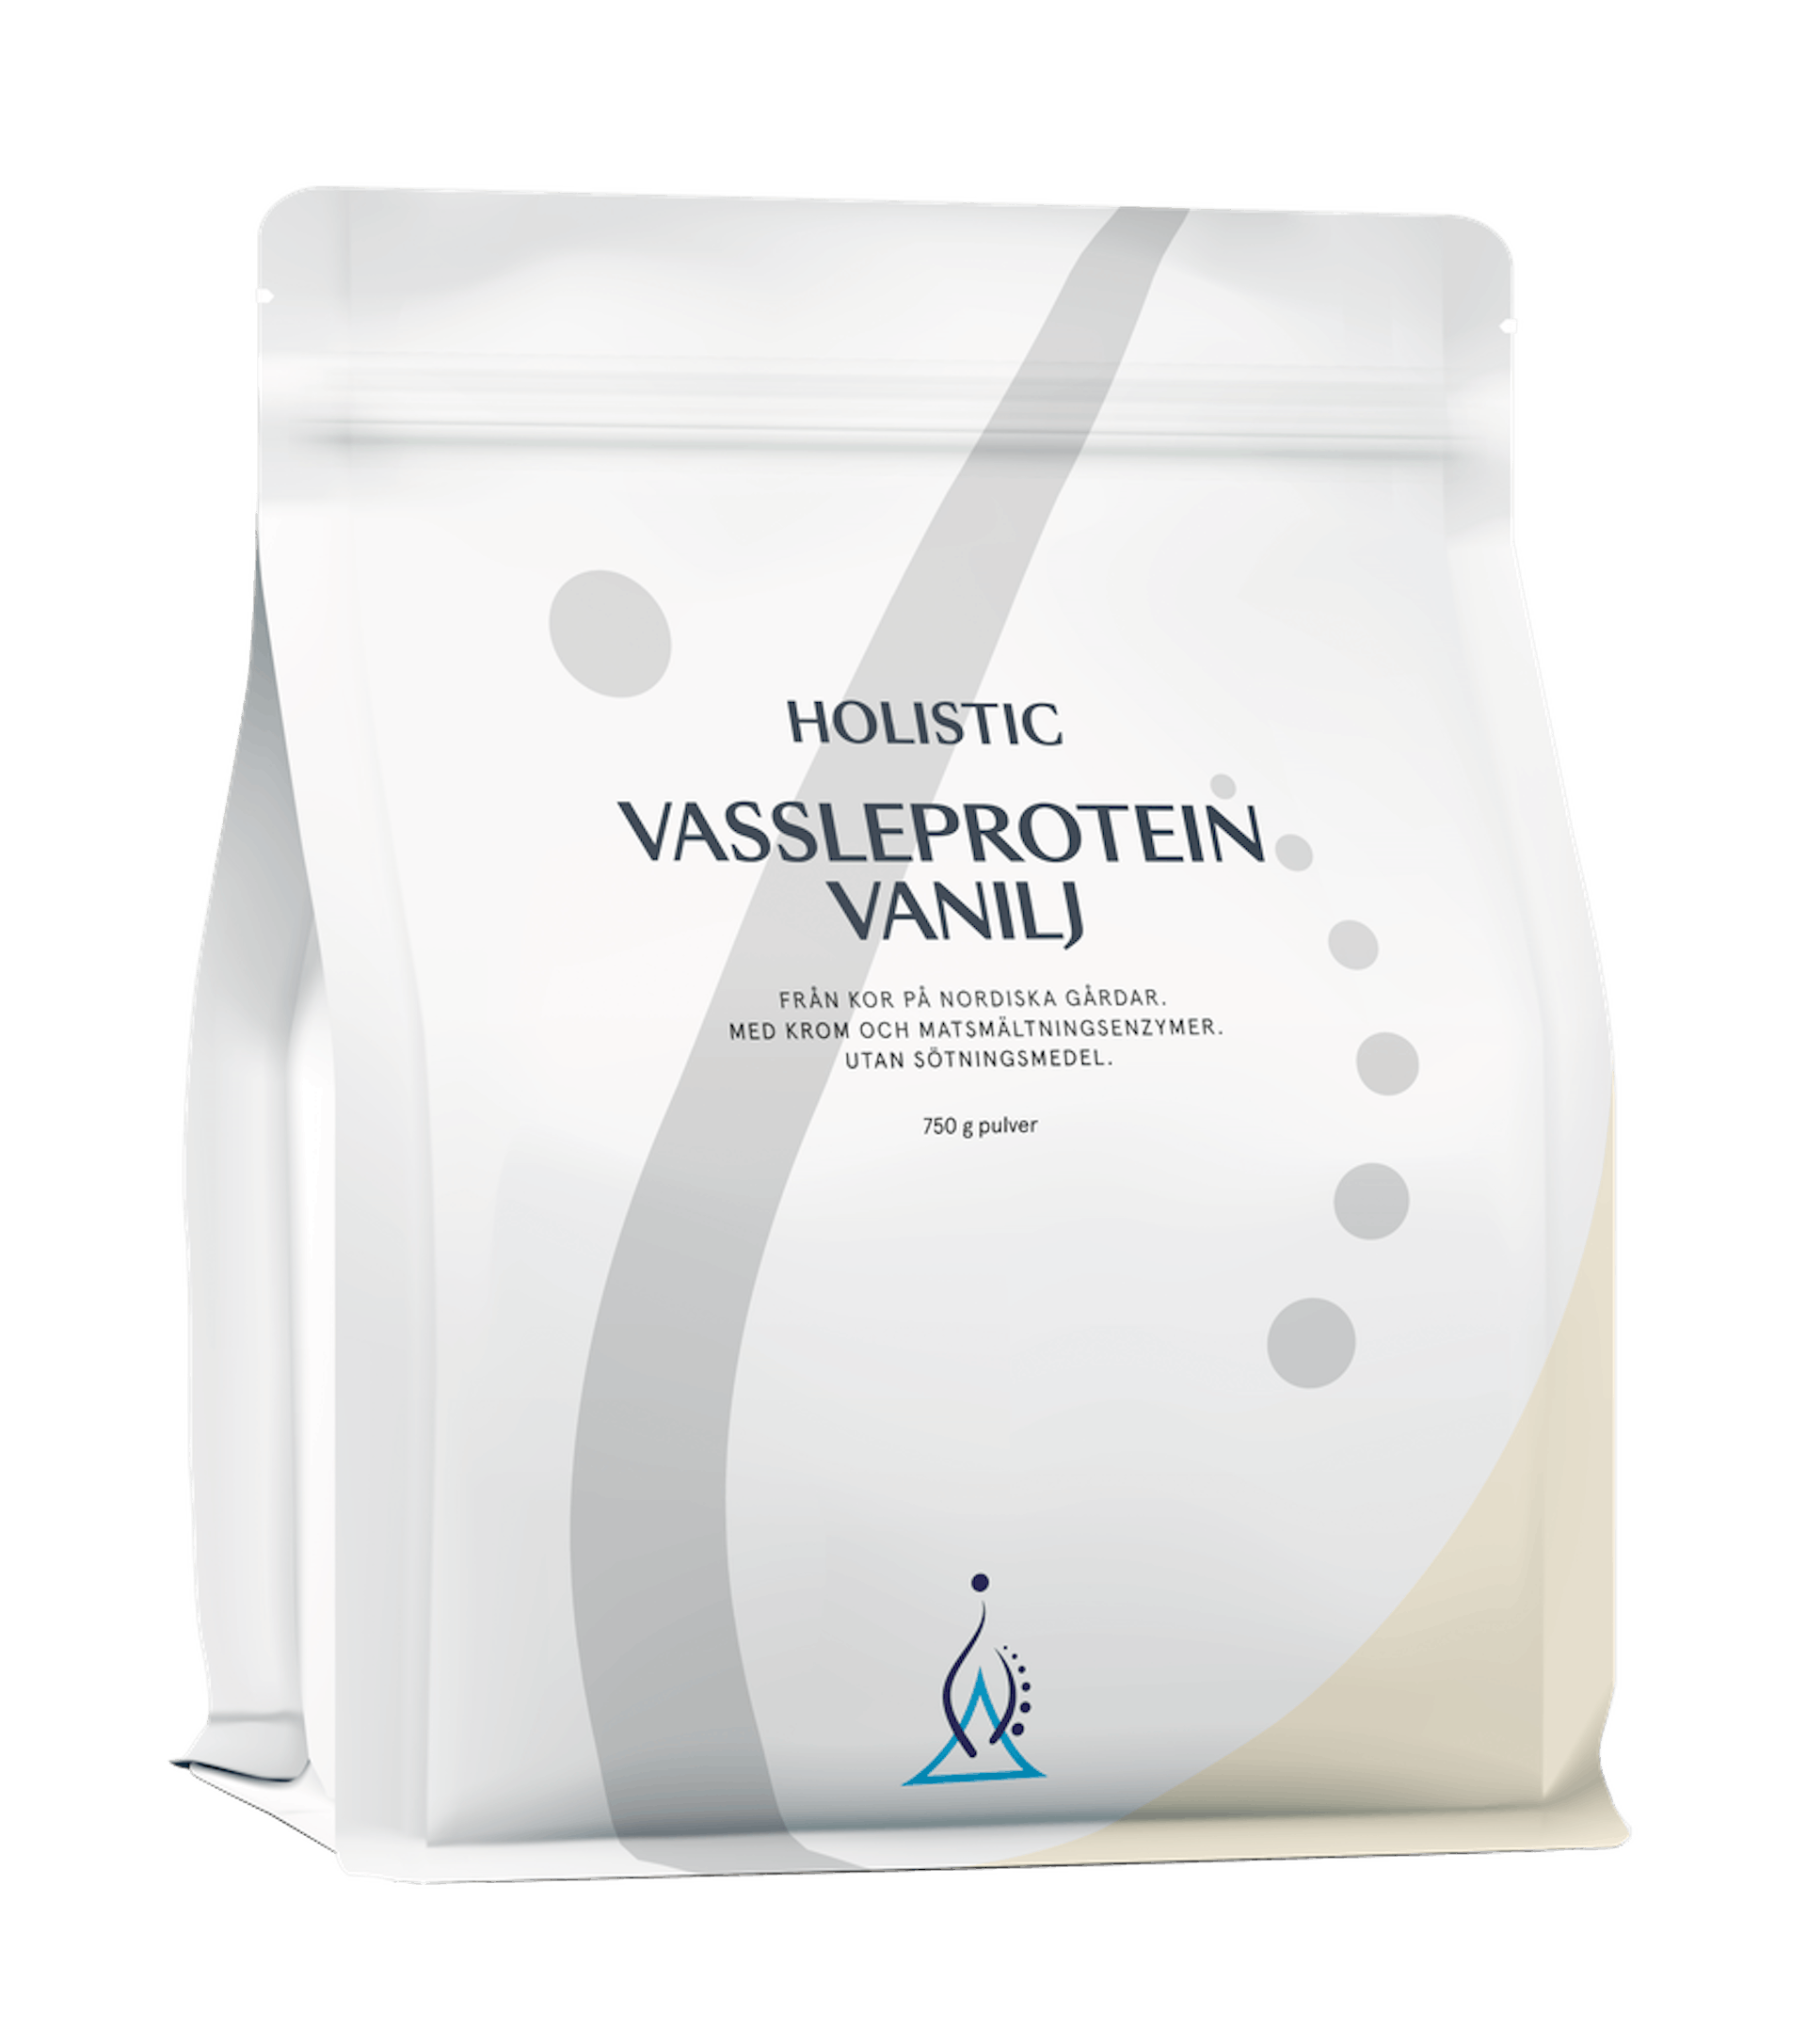 Vassleprotein vanilj, 750 g (1 av 1)